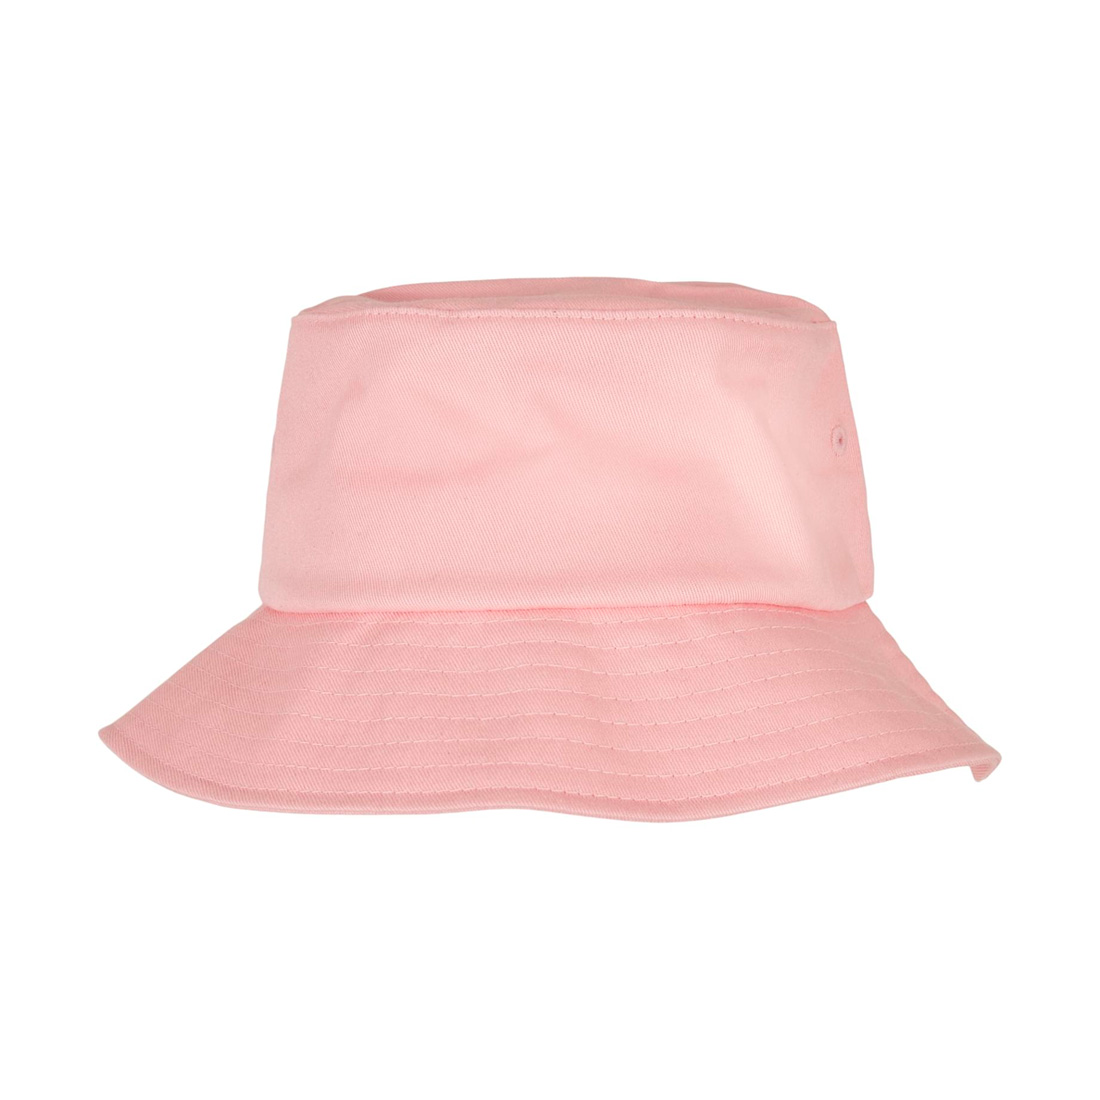 Flexfit Bucket Hat Cotton Twill (light pink)